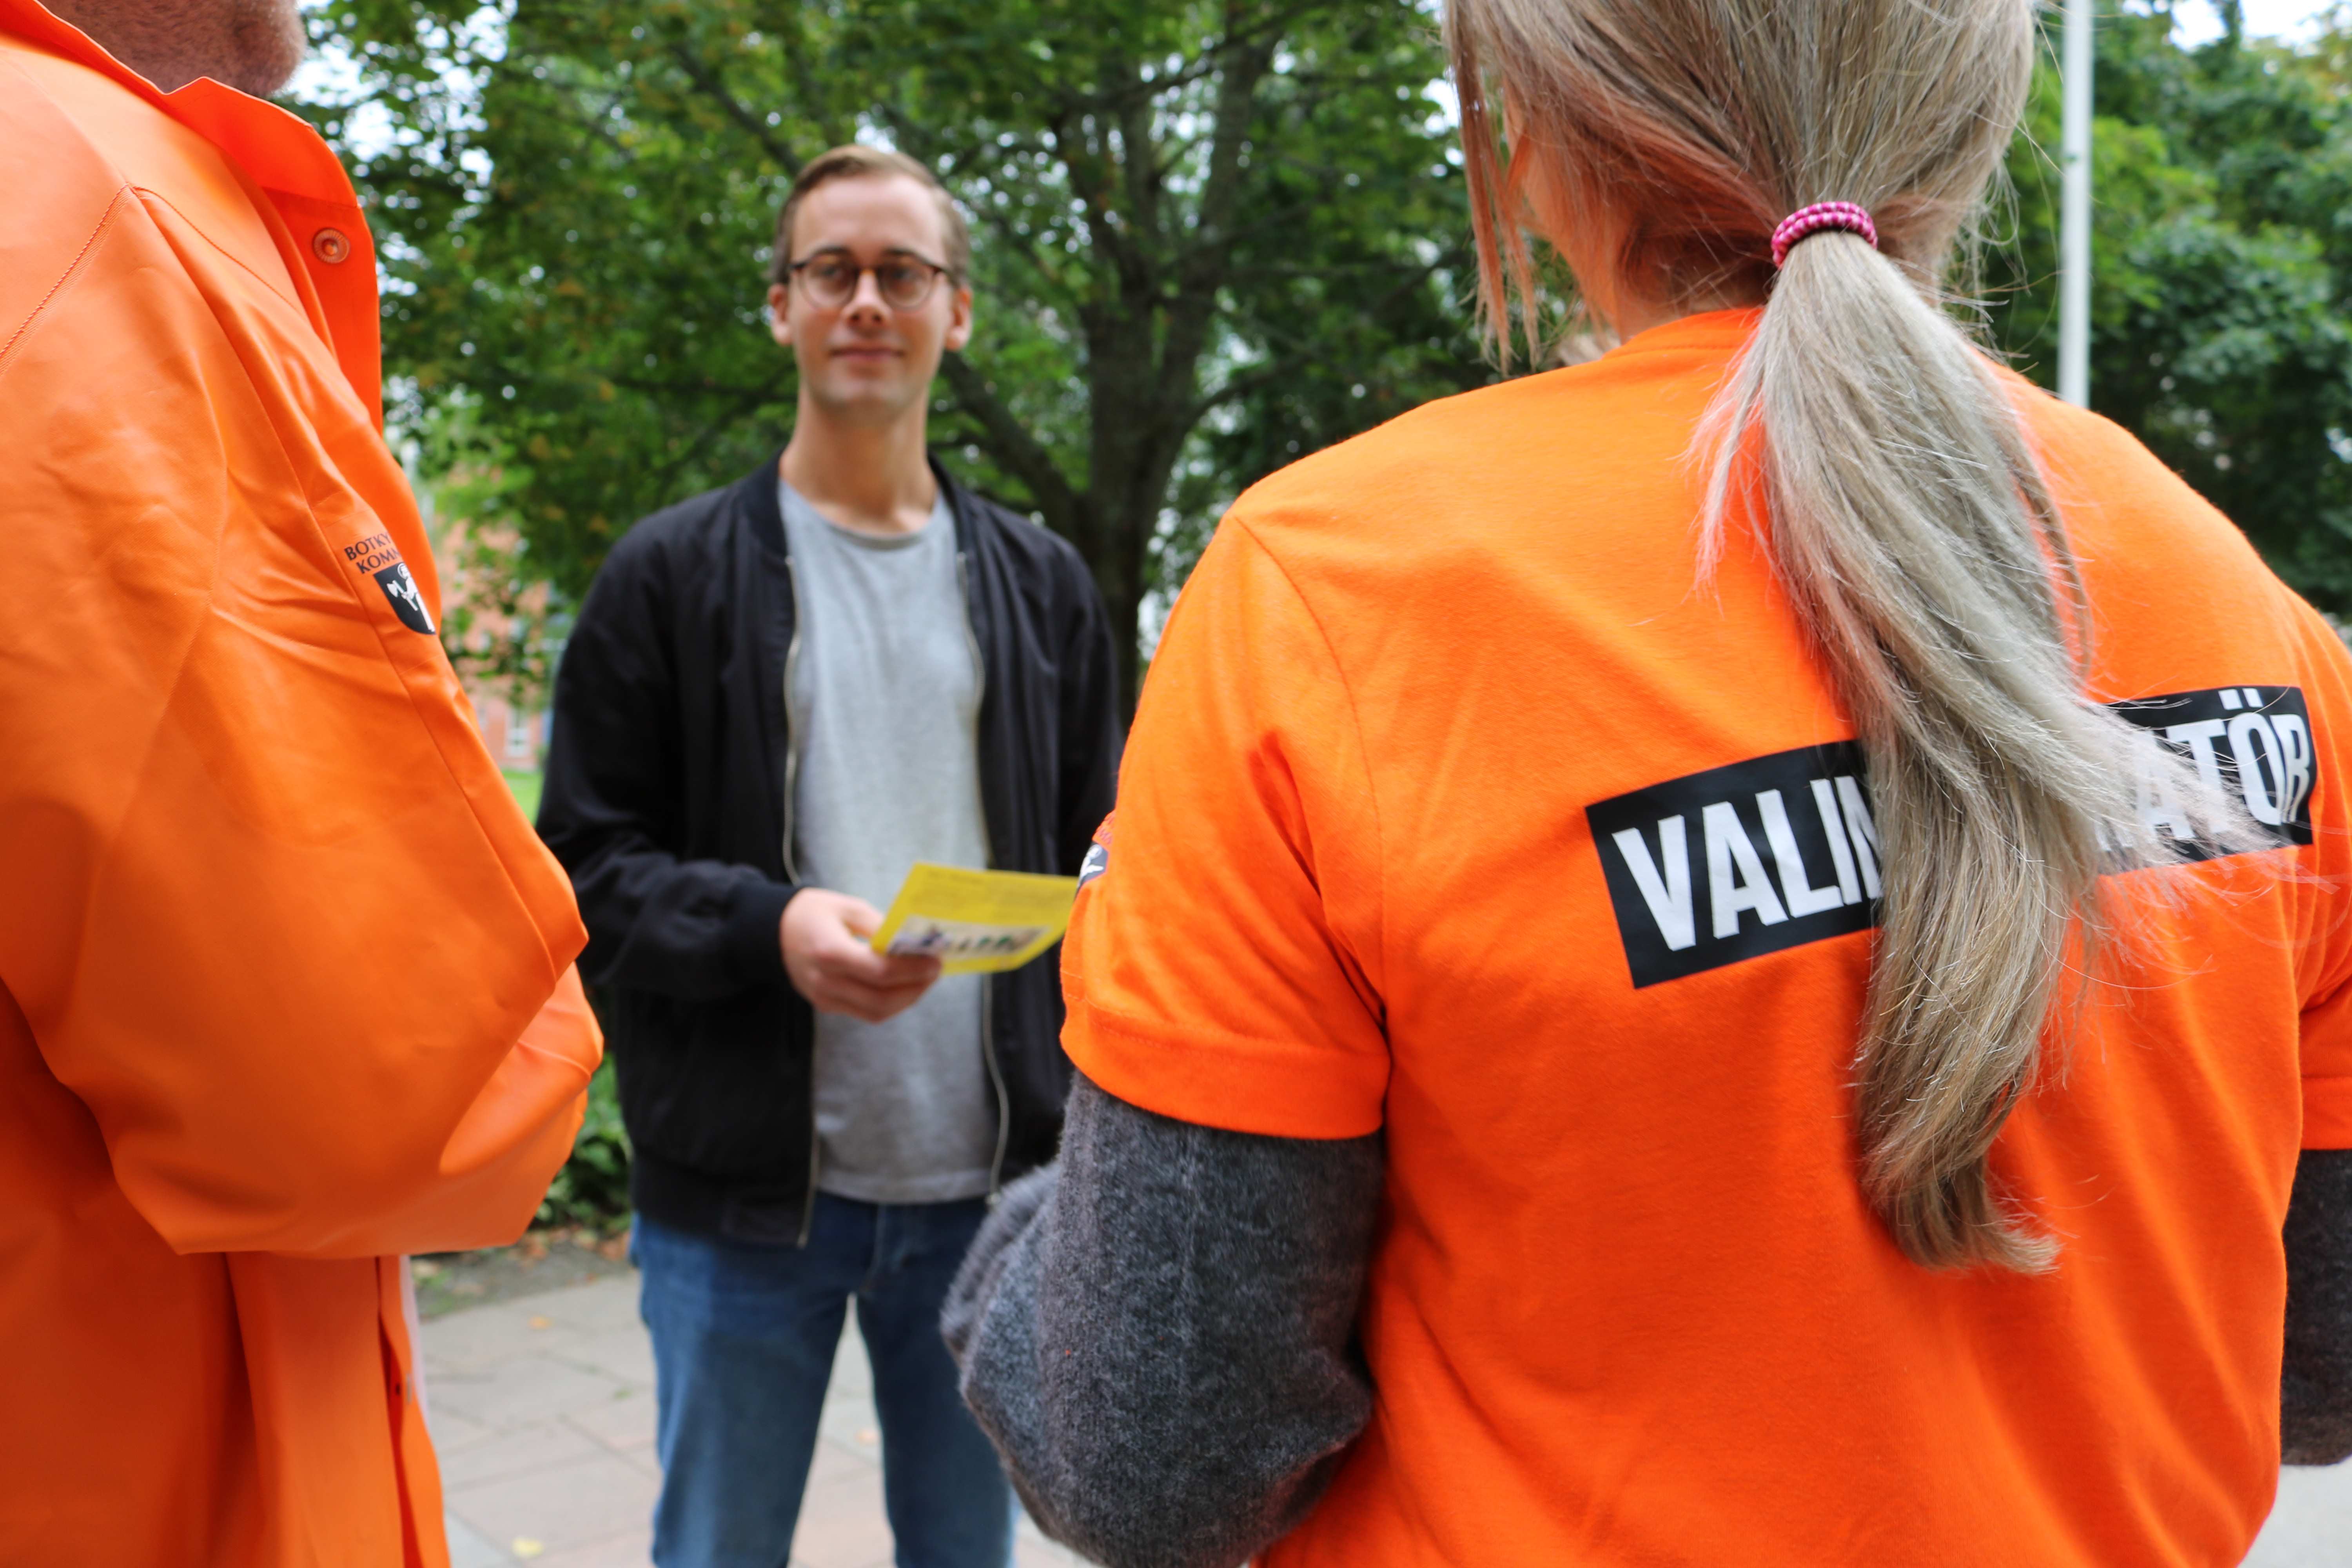 Två valinformatörer syns bakifrån. På ryggen på deras orangea kläder syns texten "Valinformatör"